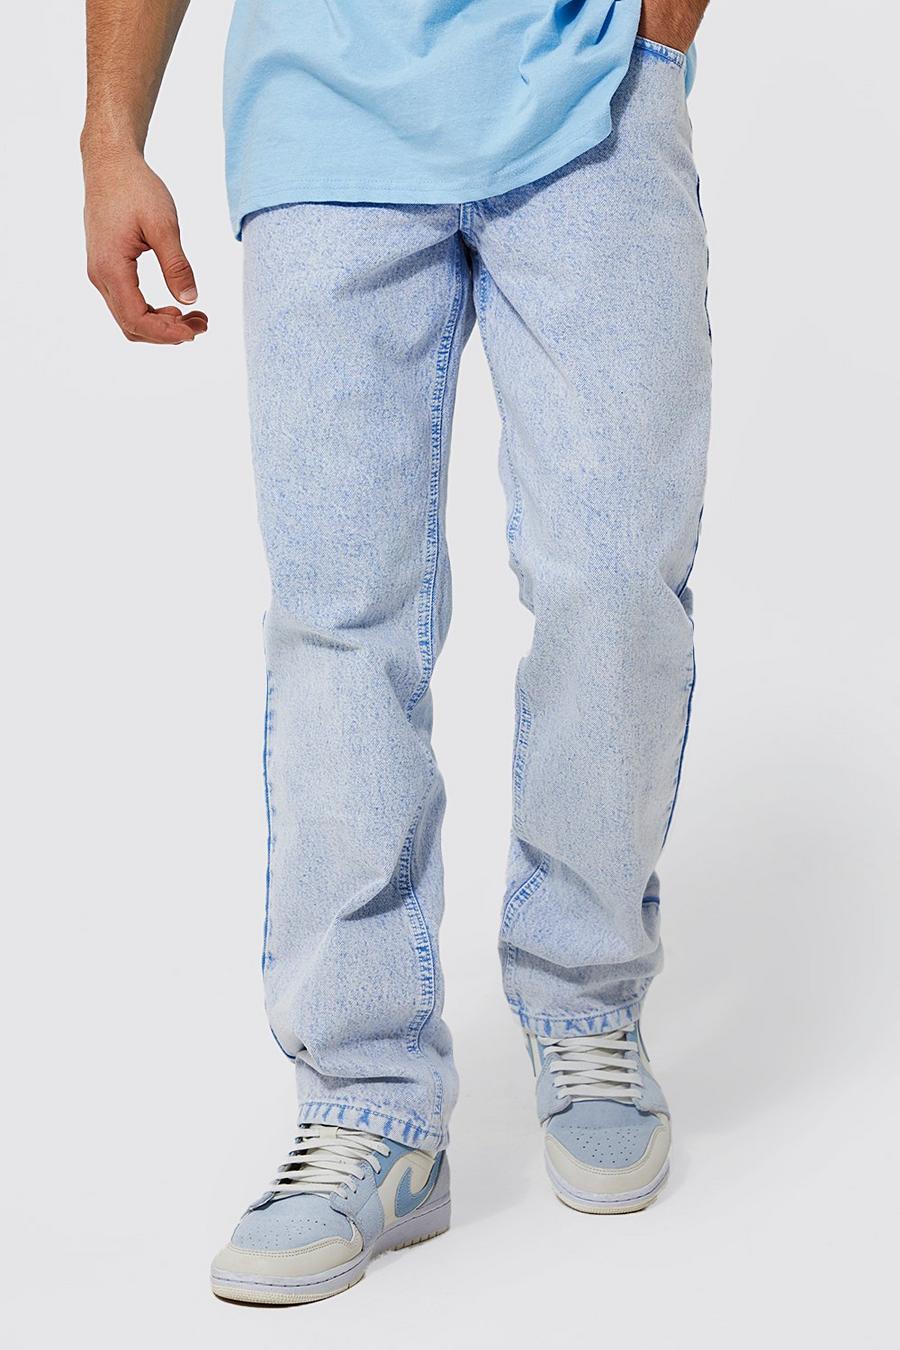 Lockere gewaschene Jeans, Light blue